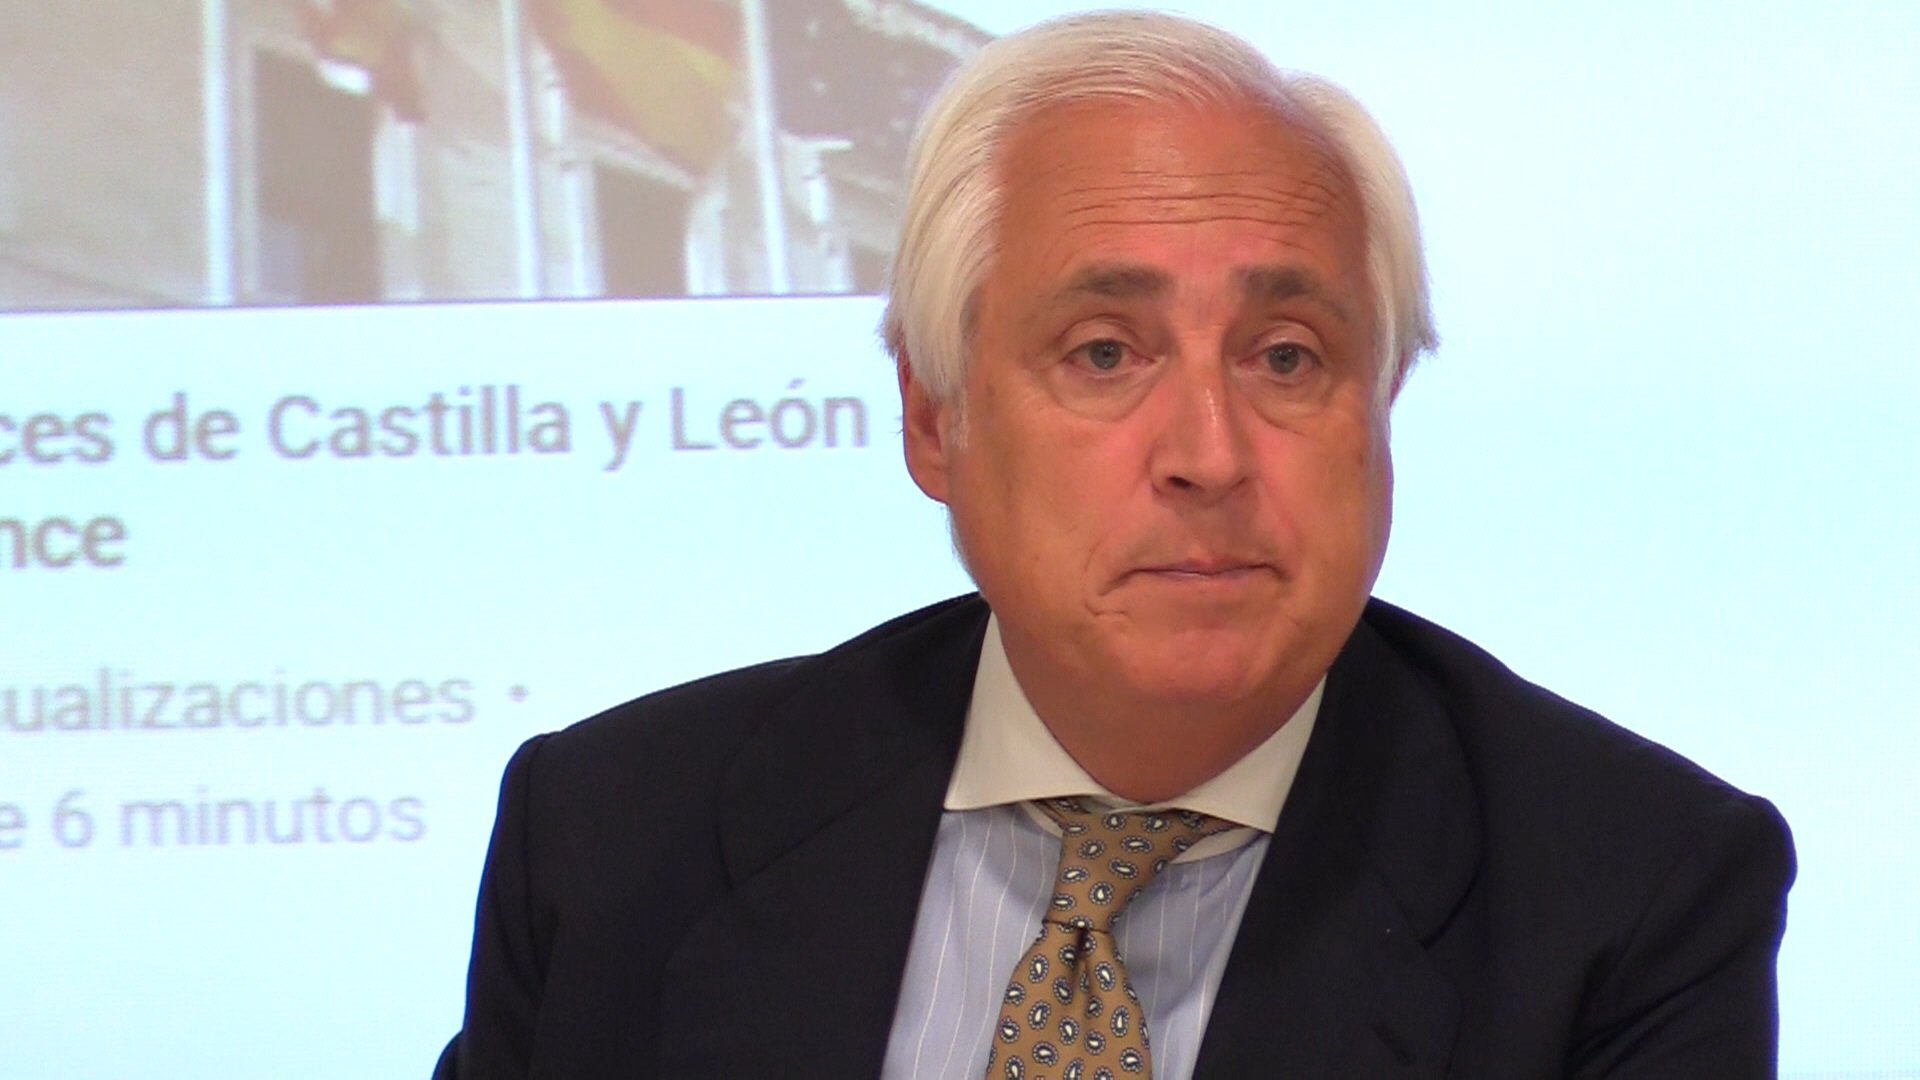 El presidente del Tribunal de Castilla y León critica sin complejos a Iglesias